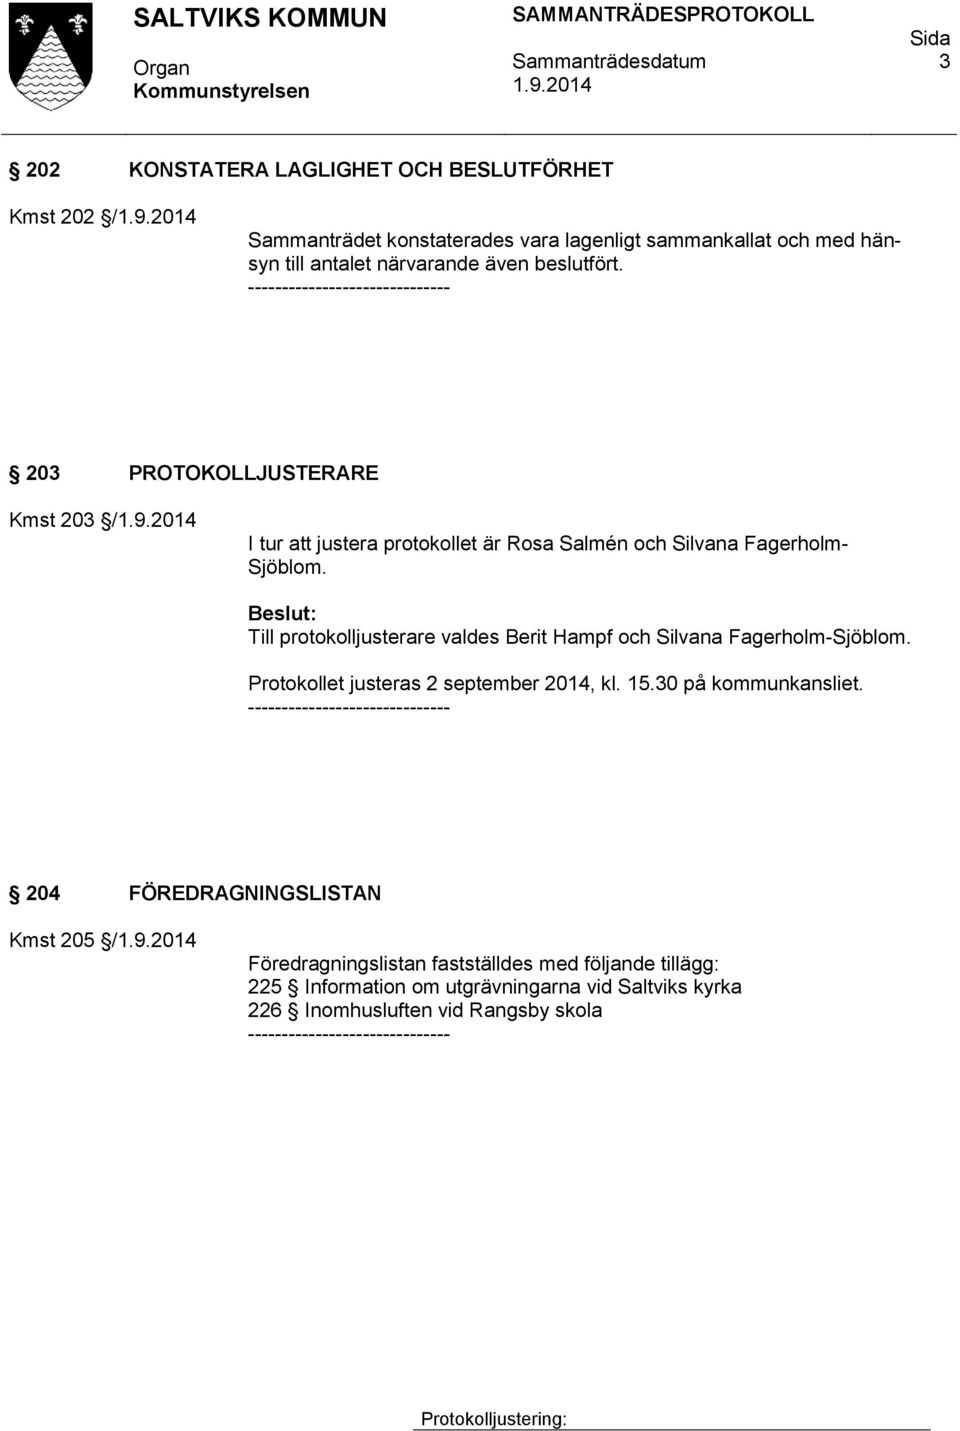 Till protokolljusterare valdes Berit Hampf och Silvana Fagerholm-Sjöblom. Protokollet justeras 2 september 2014, kl. 15.30 på kommunkansliet.